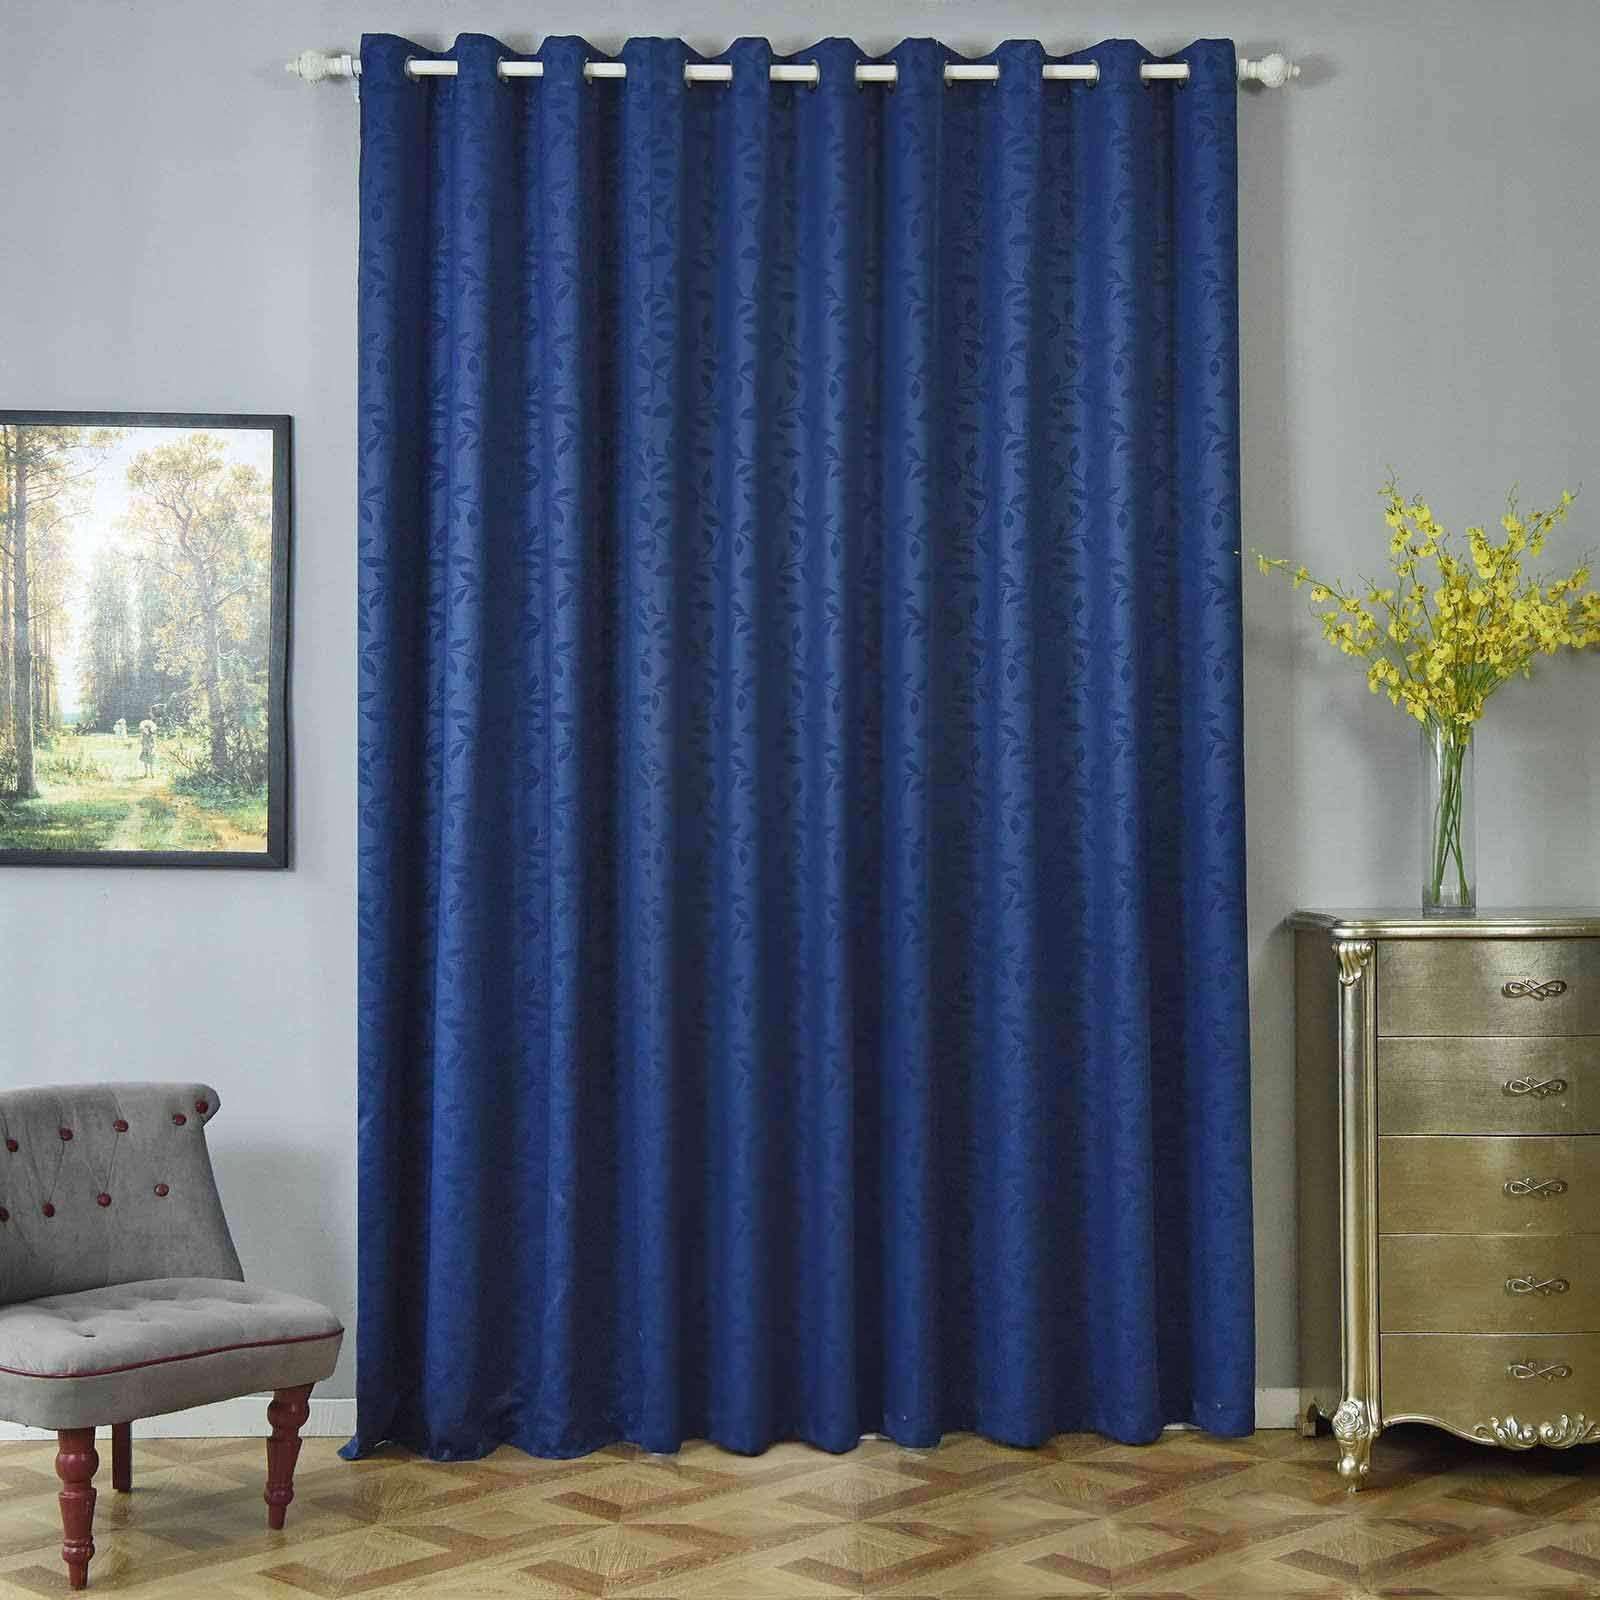 navy blue grommet blackout curtains